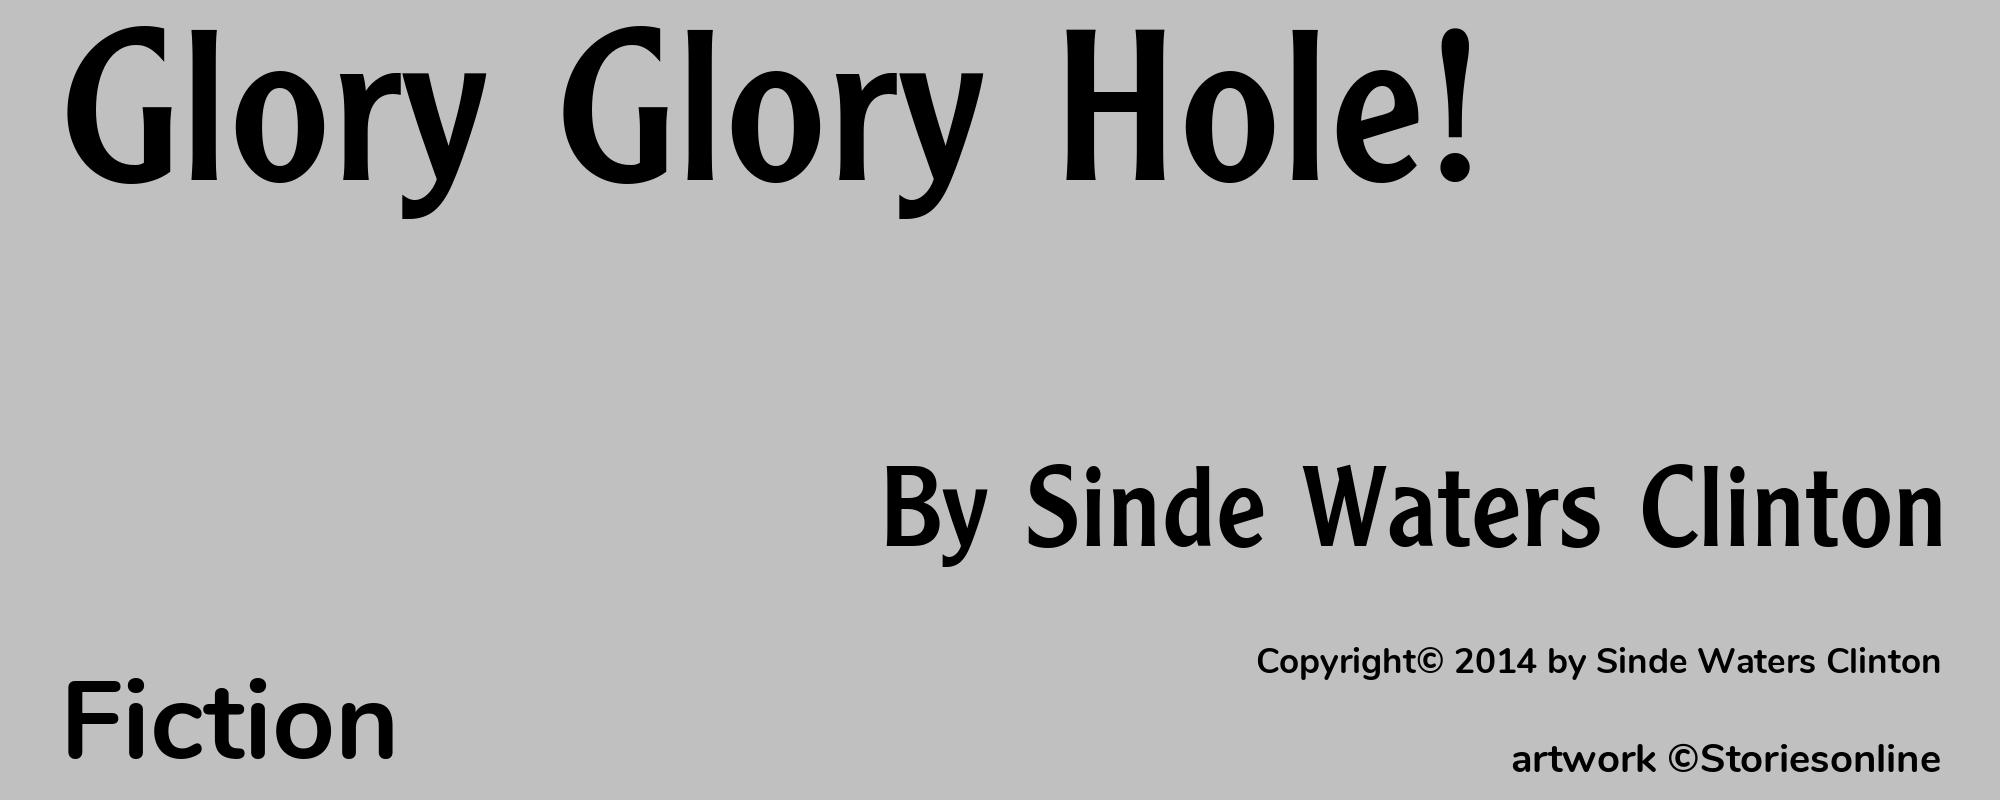 Glory Glory Hole! - Cover